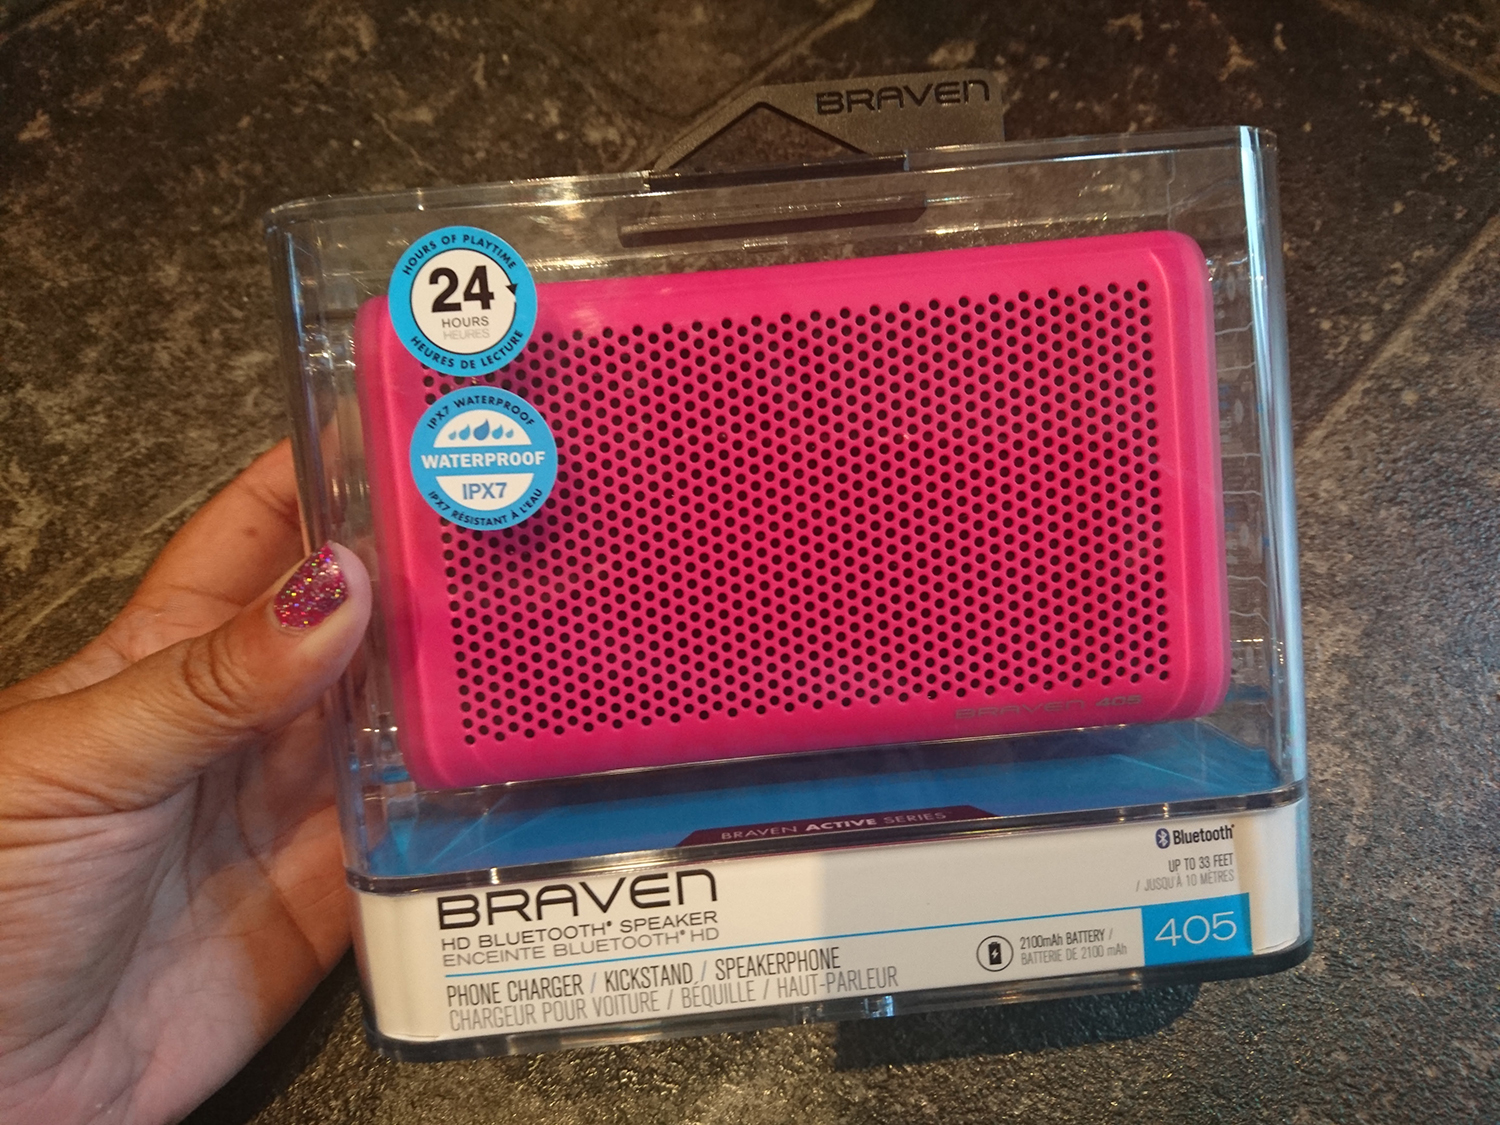 Braven 405 Bluetooth Speaker Packaging